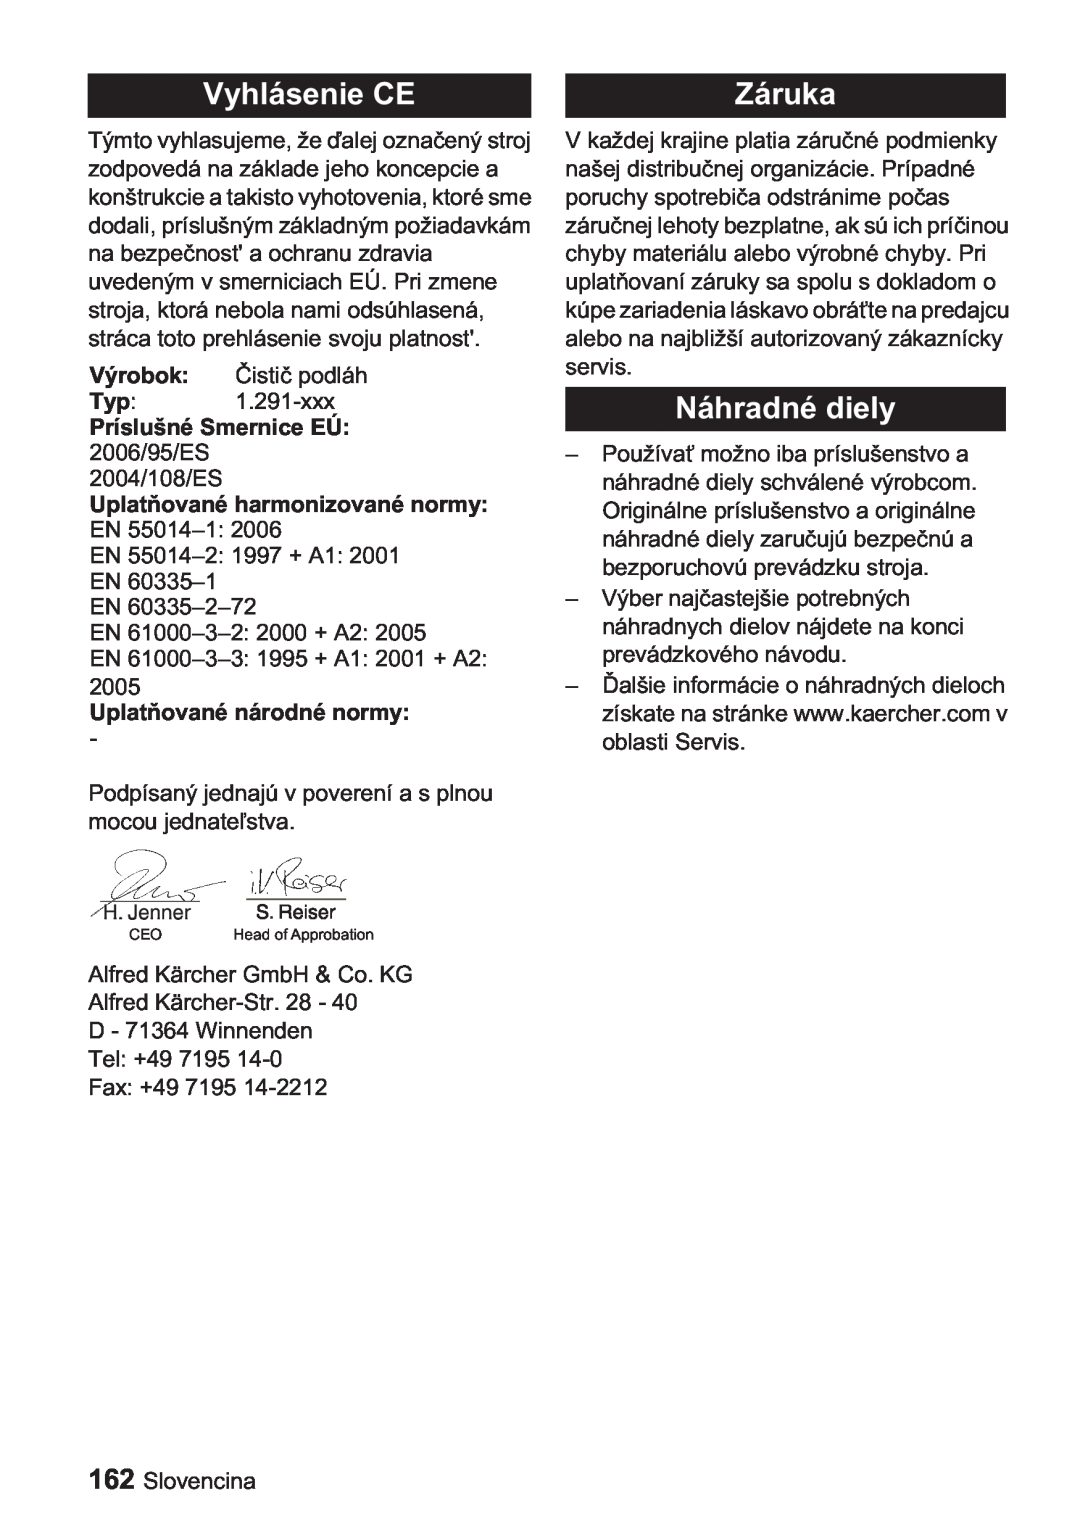 Karcher BDP 1500, BDP 50 manual Vyhlásenie CE, Náhradné diely, Výrobok, Uplatodné normy, Záruka 